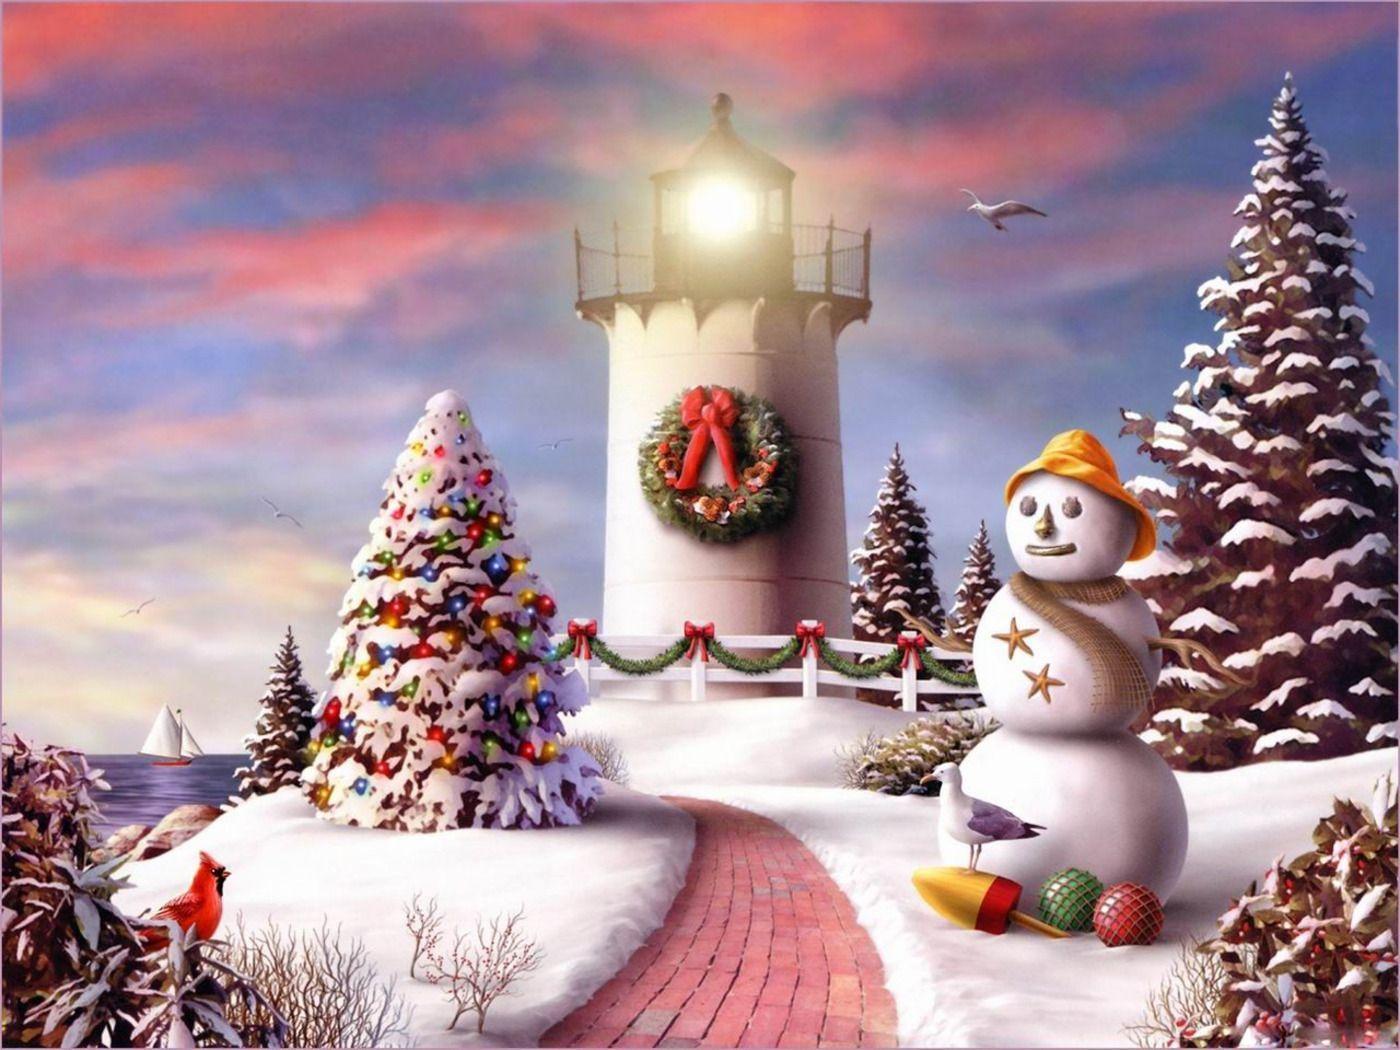 Hình nền nhà đèn biển được trang trí đầy Giáng sinh sẽ mang đến cho bạn cảm giác như đang đứng trước một ngôi nhà đầy ấm áp và hoàn toàn được trang trí đầy màu sắc và tình yêu. Hãy để hình nền này đưa bạn đến một cuộc hành trình trở thành một phần của không khí lễ hội này!